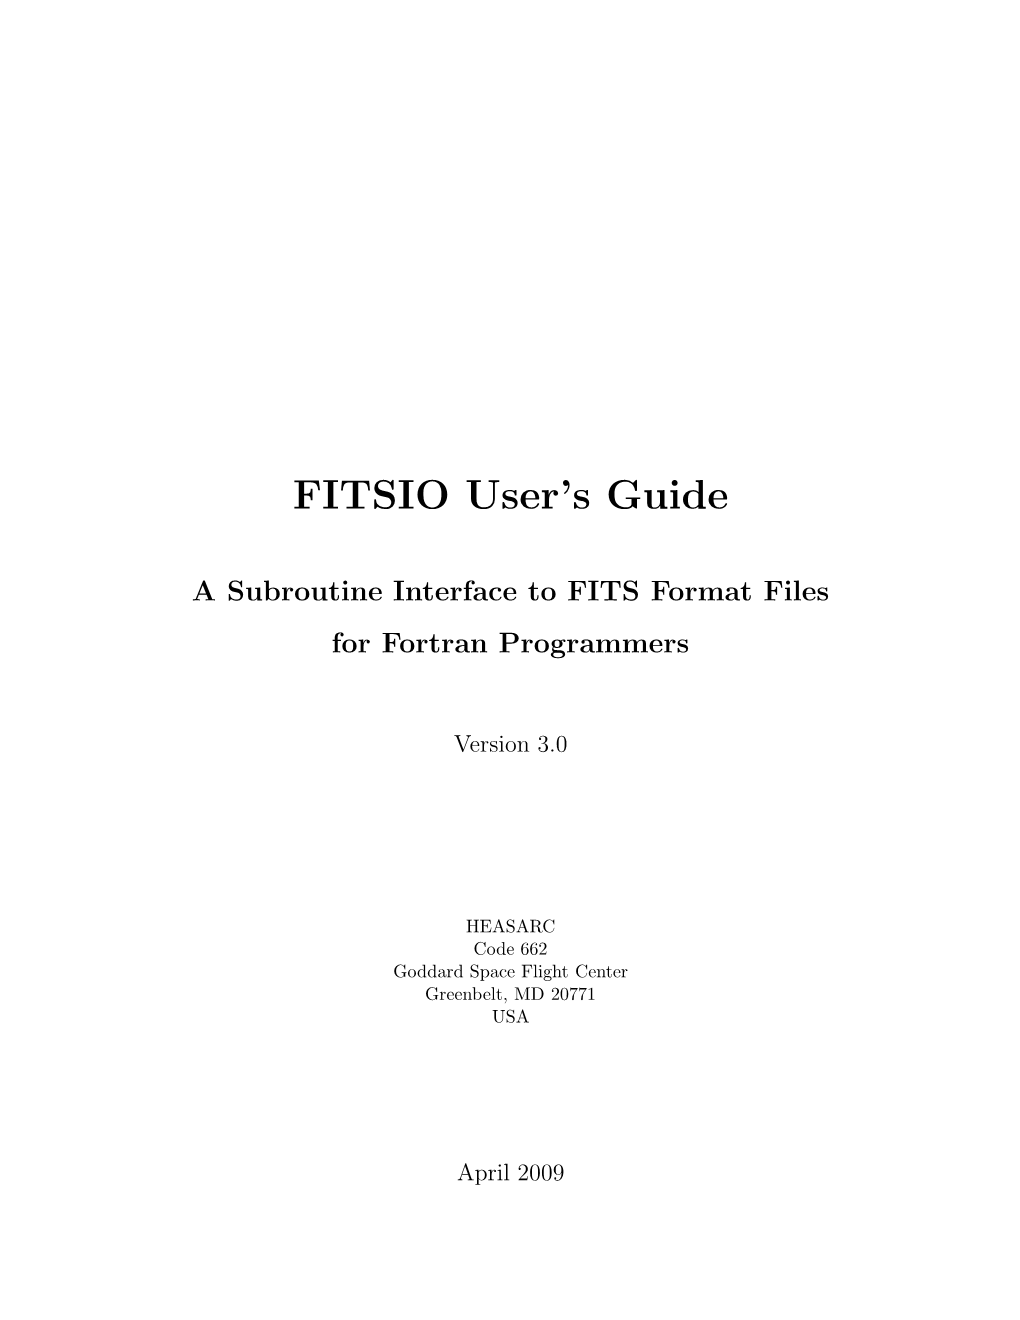 FITSIO User's Guide